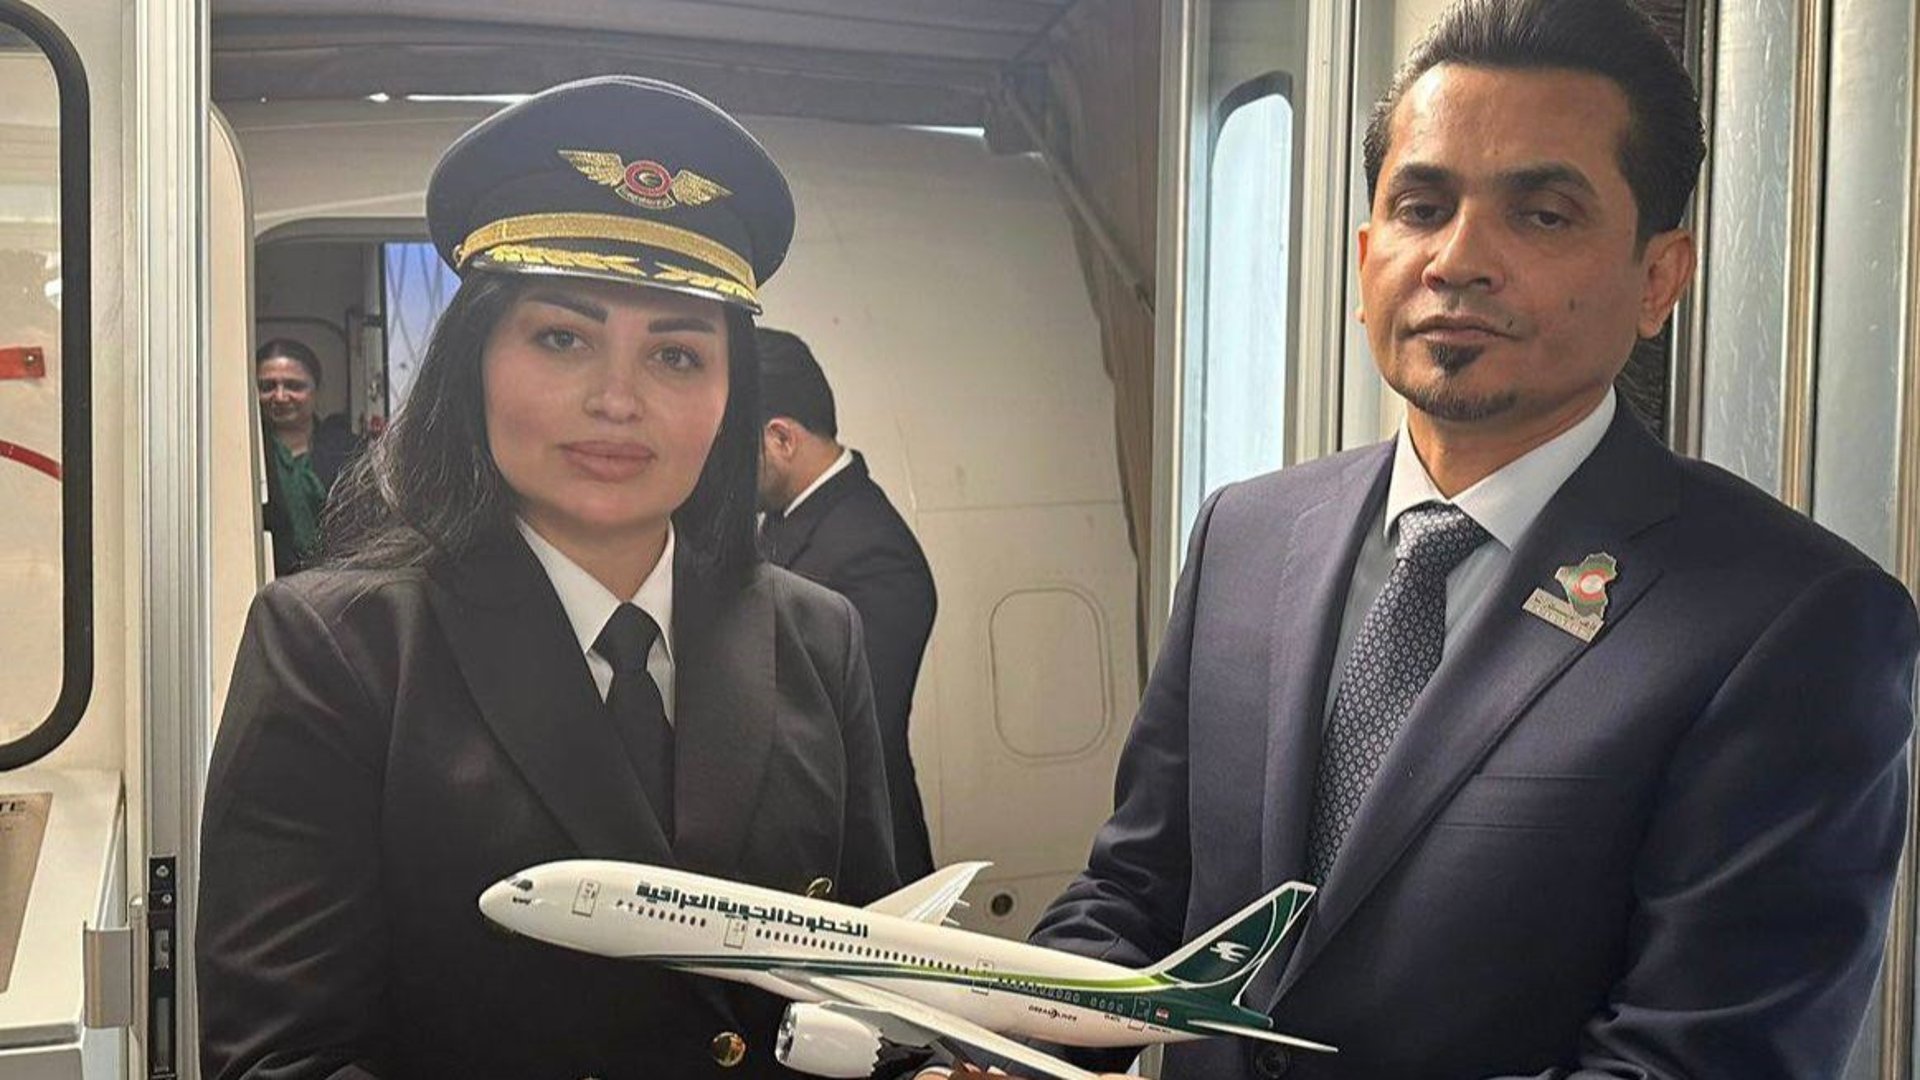 صور: أول رحلة للكابتن رزين من بغداد إلى دبي.. حفل في المطار وتكريم من الوزير